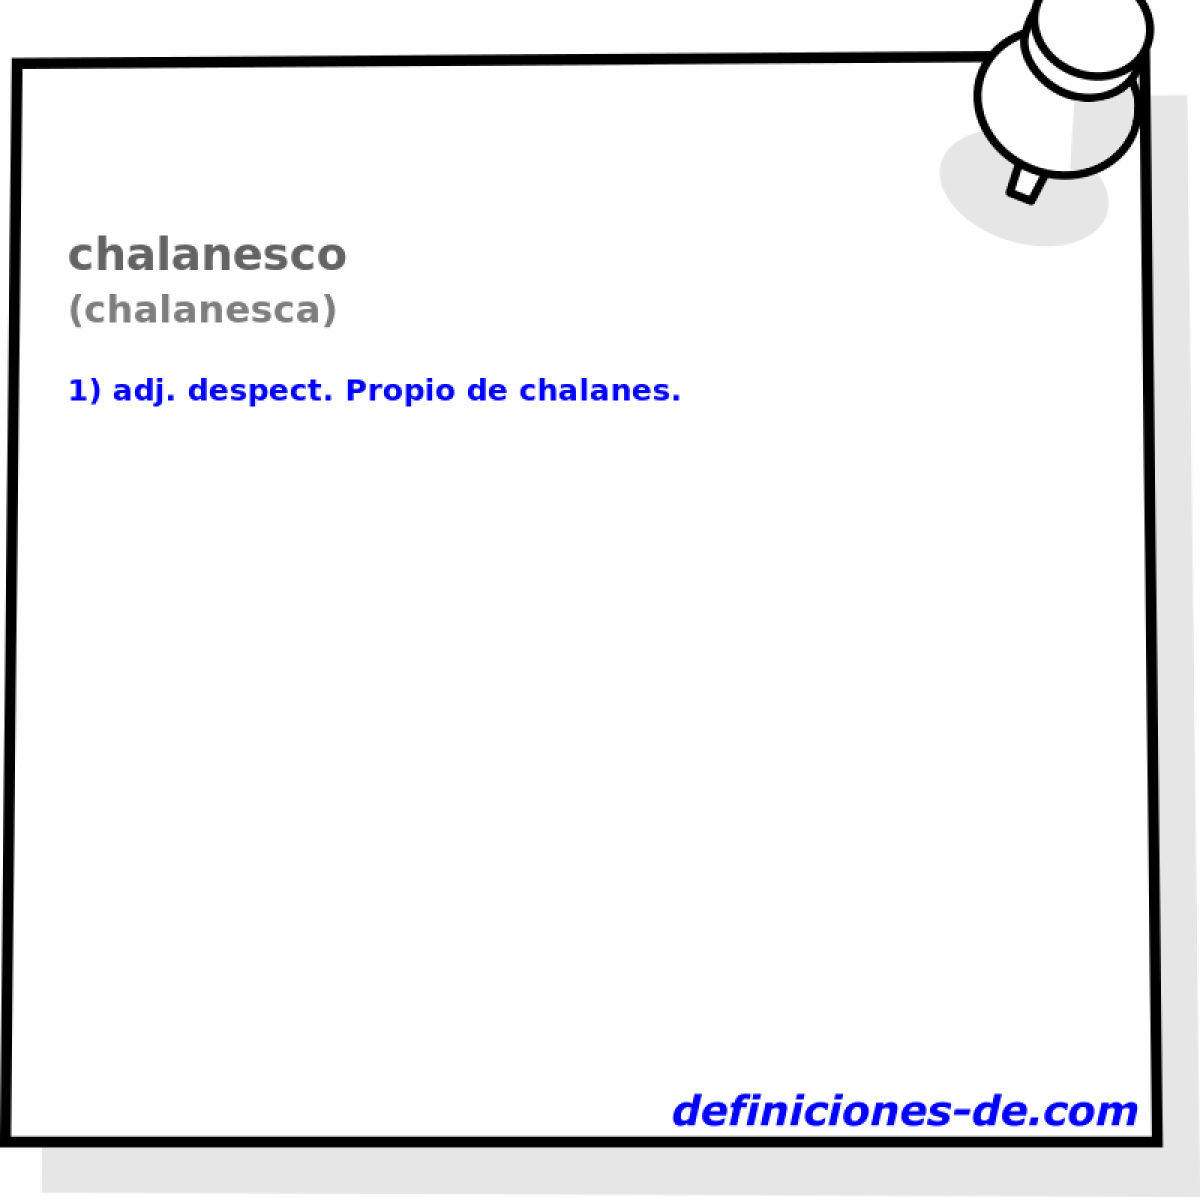 chalanesco (chalanesca)